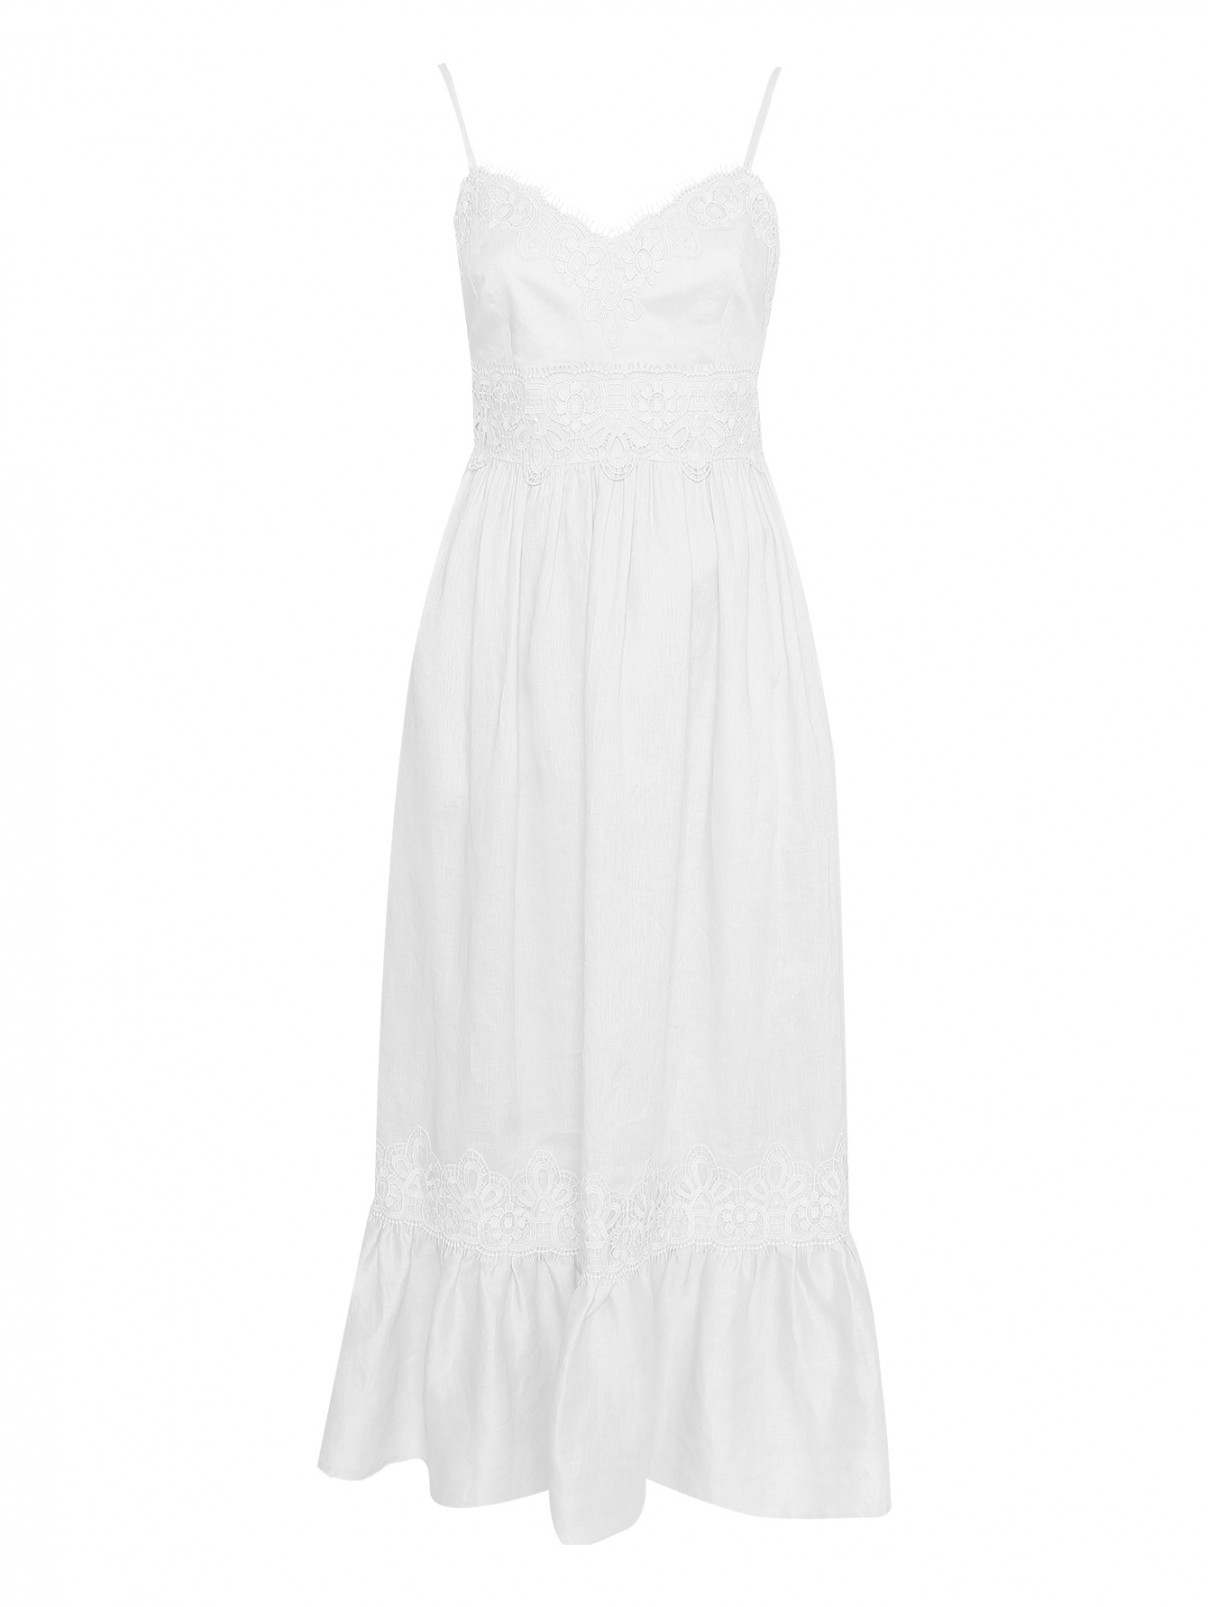 Платье-миди из льна с кружевной отделкой Luisa Spagnoli  –  Общий вид  – Цвет:  Белый